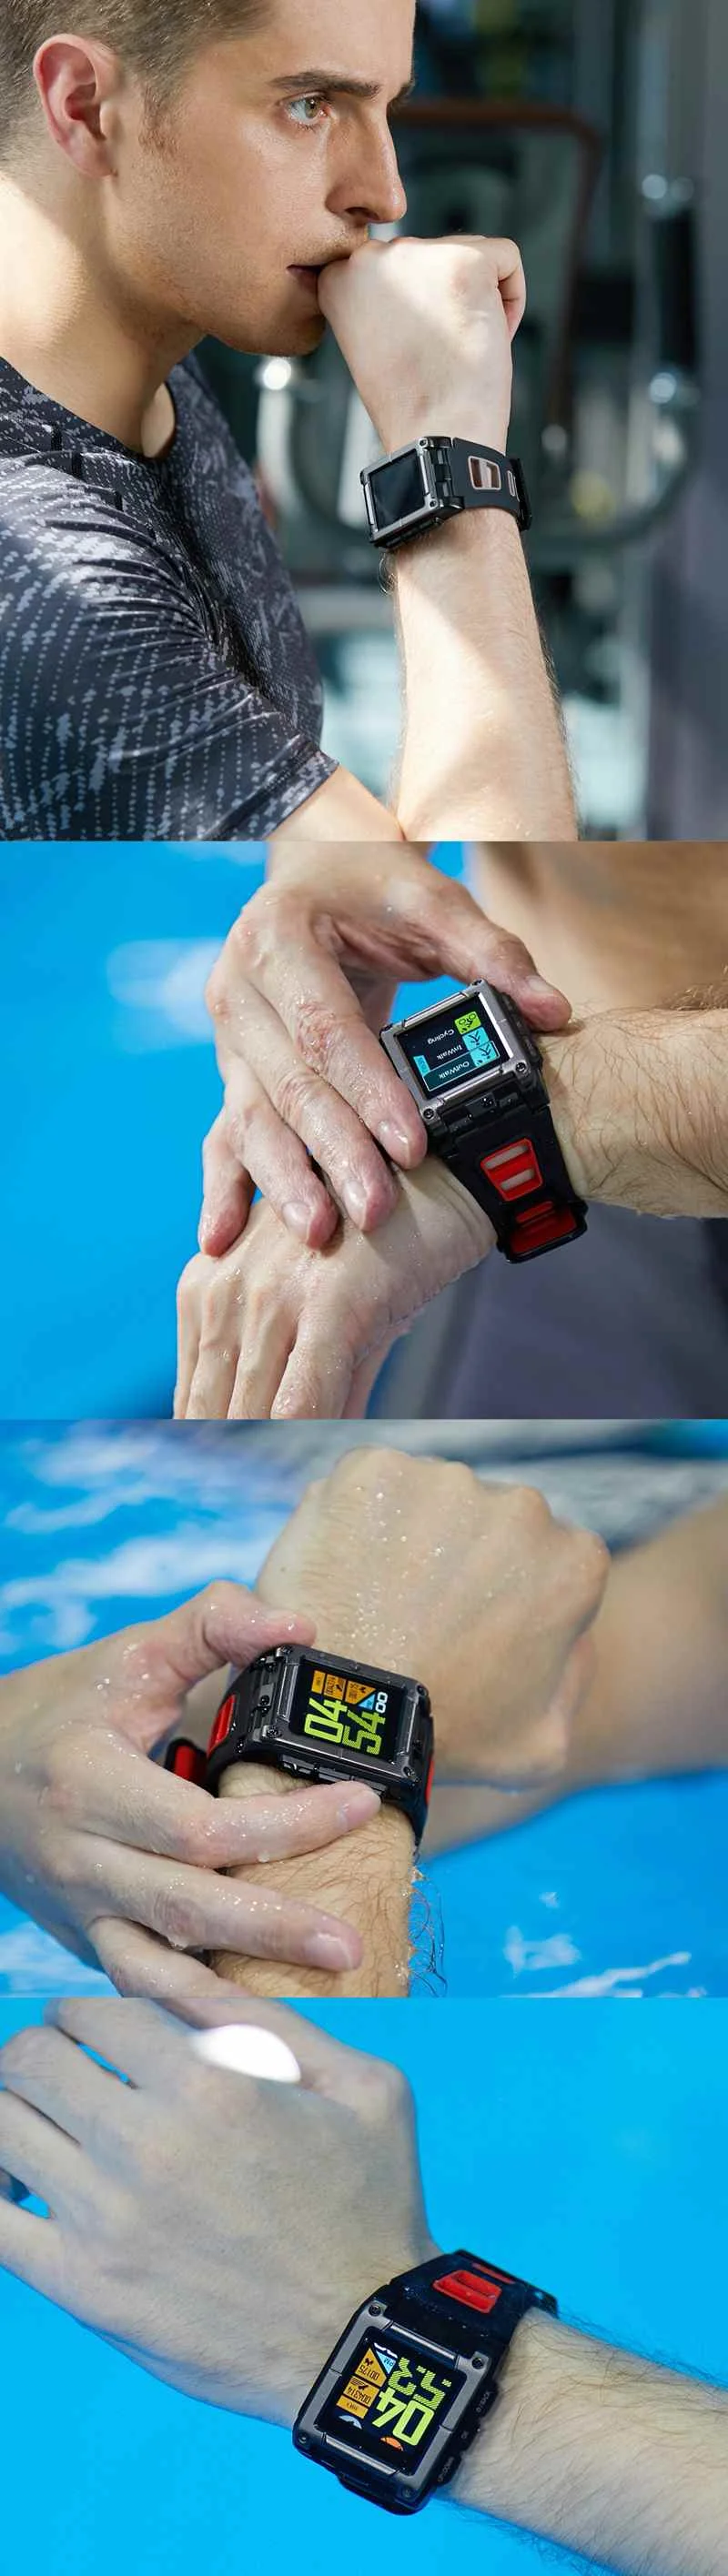 S929 gps умный Браслет для плавания спортивные Смарт-часы IP68 Водонепроницаемый фитнес-трекер Секундомер Монитор сердечного ритма Smartwatch